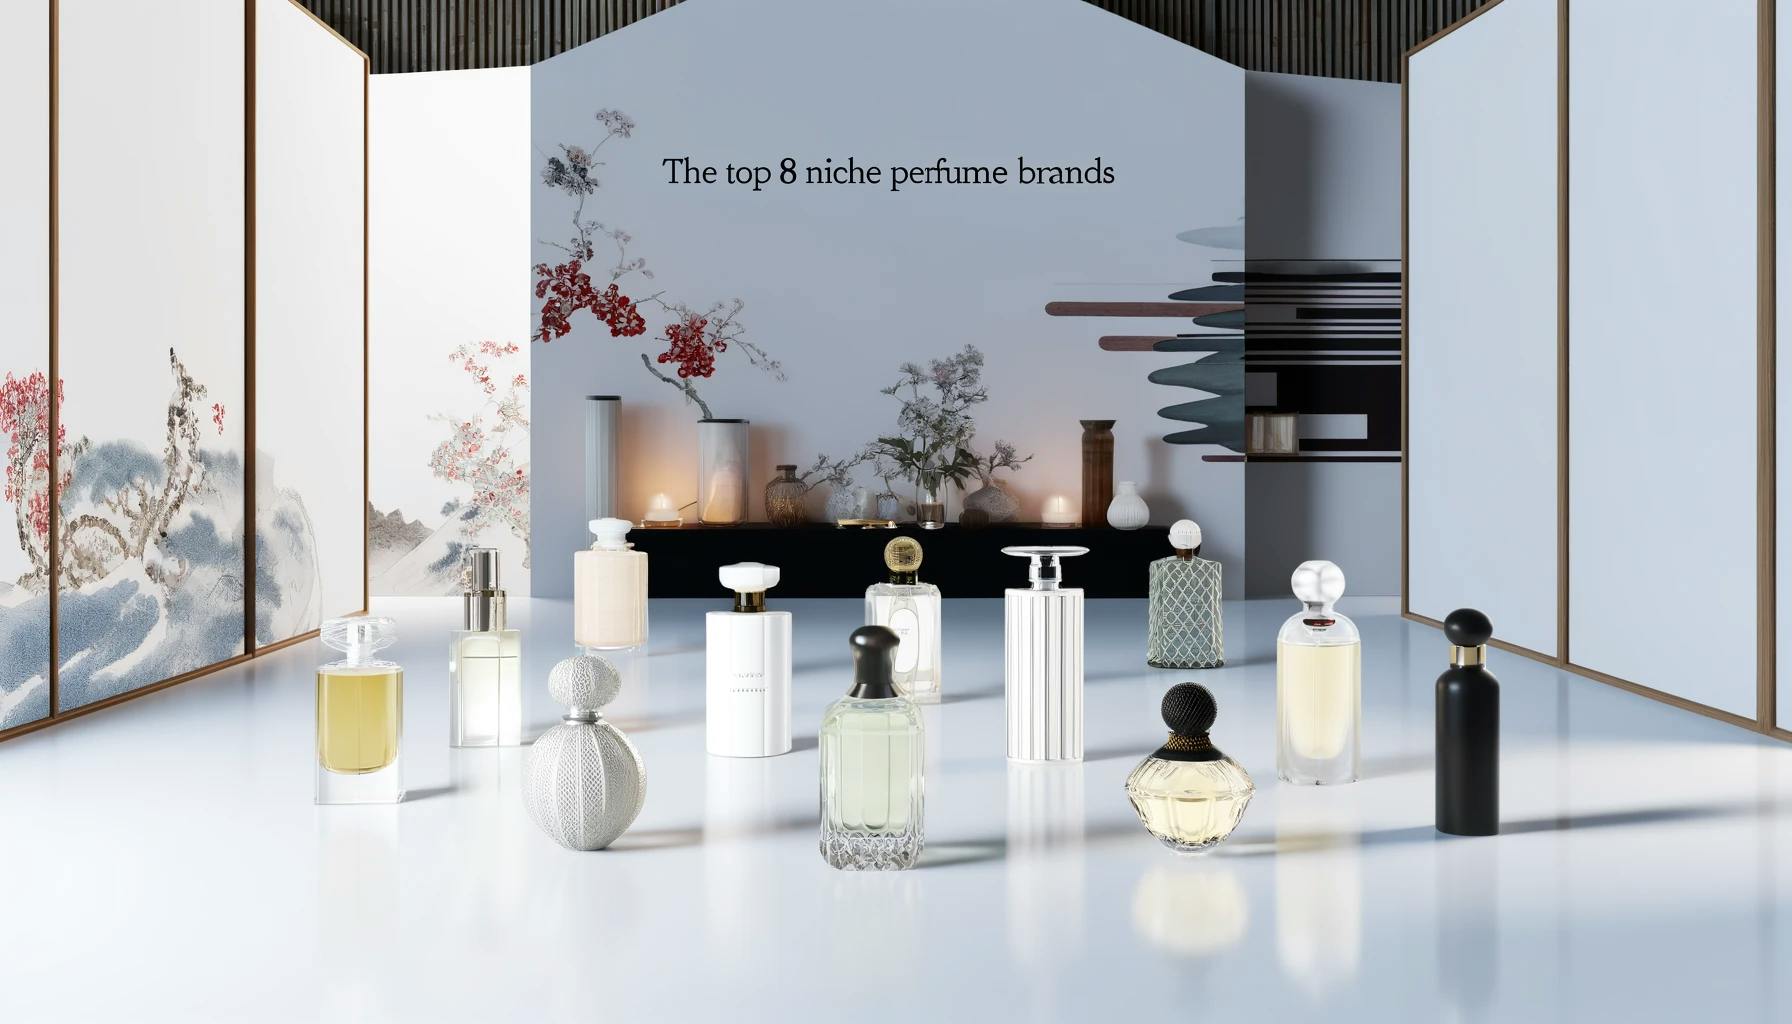 Cover Image for 海外視点での「日本のニッチ香水ブランドトップ8」